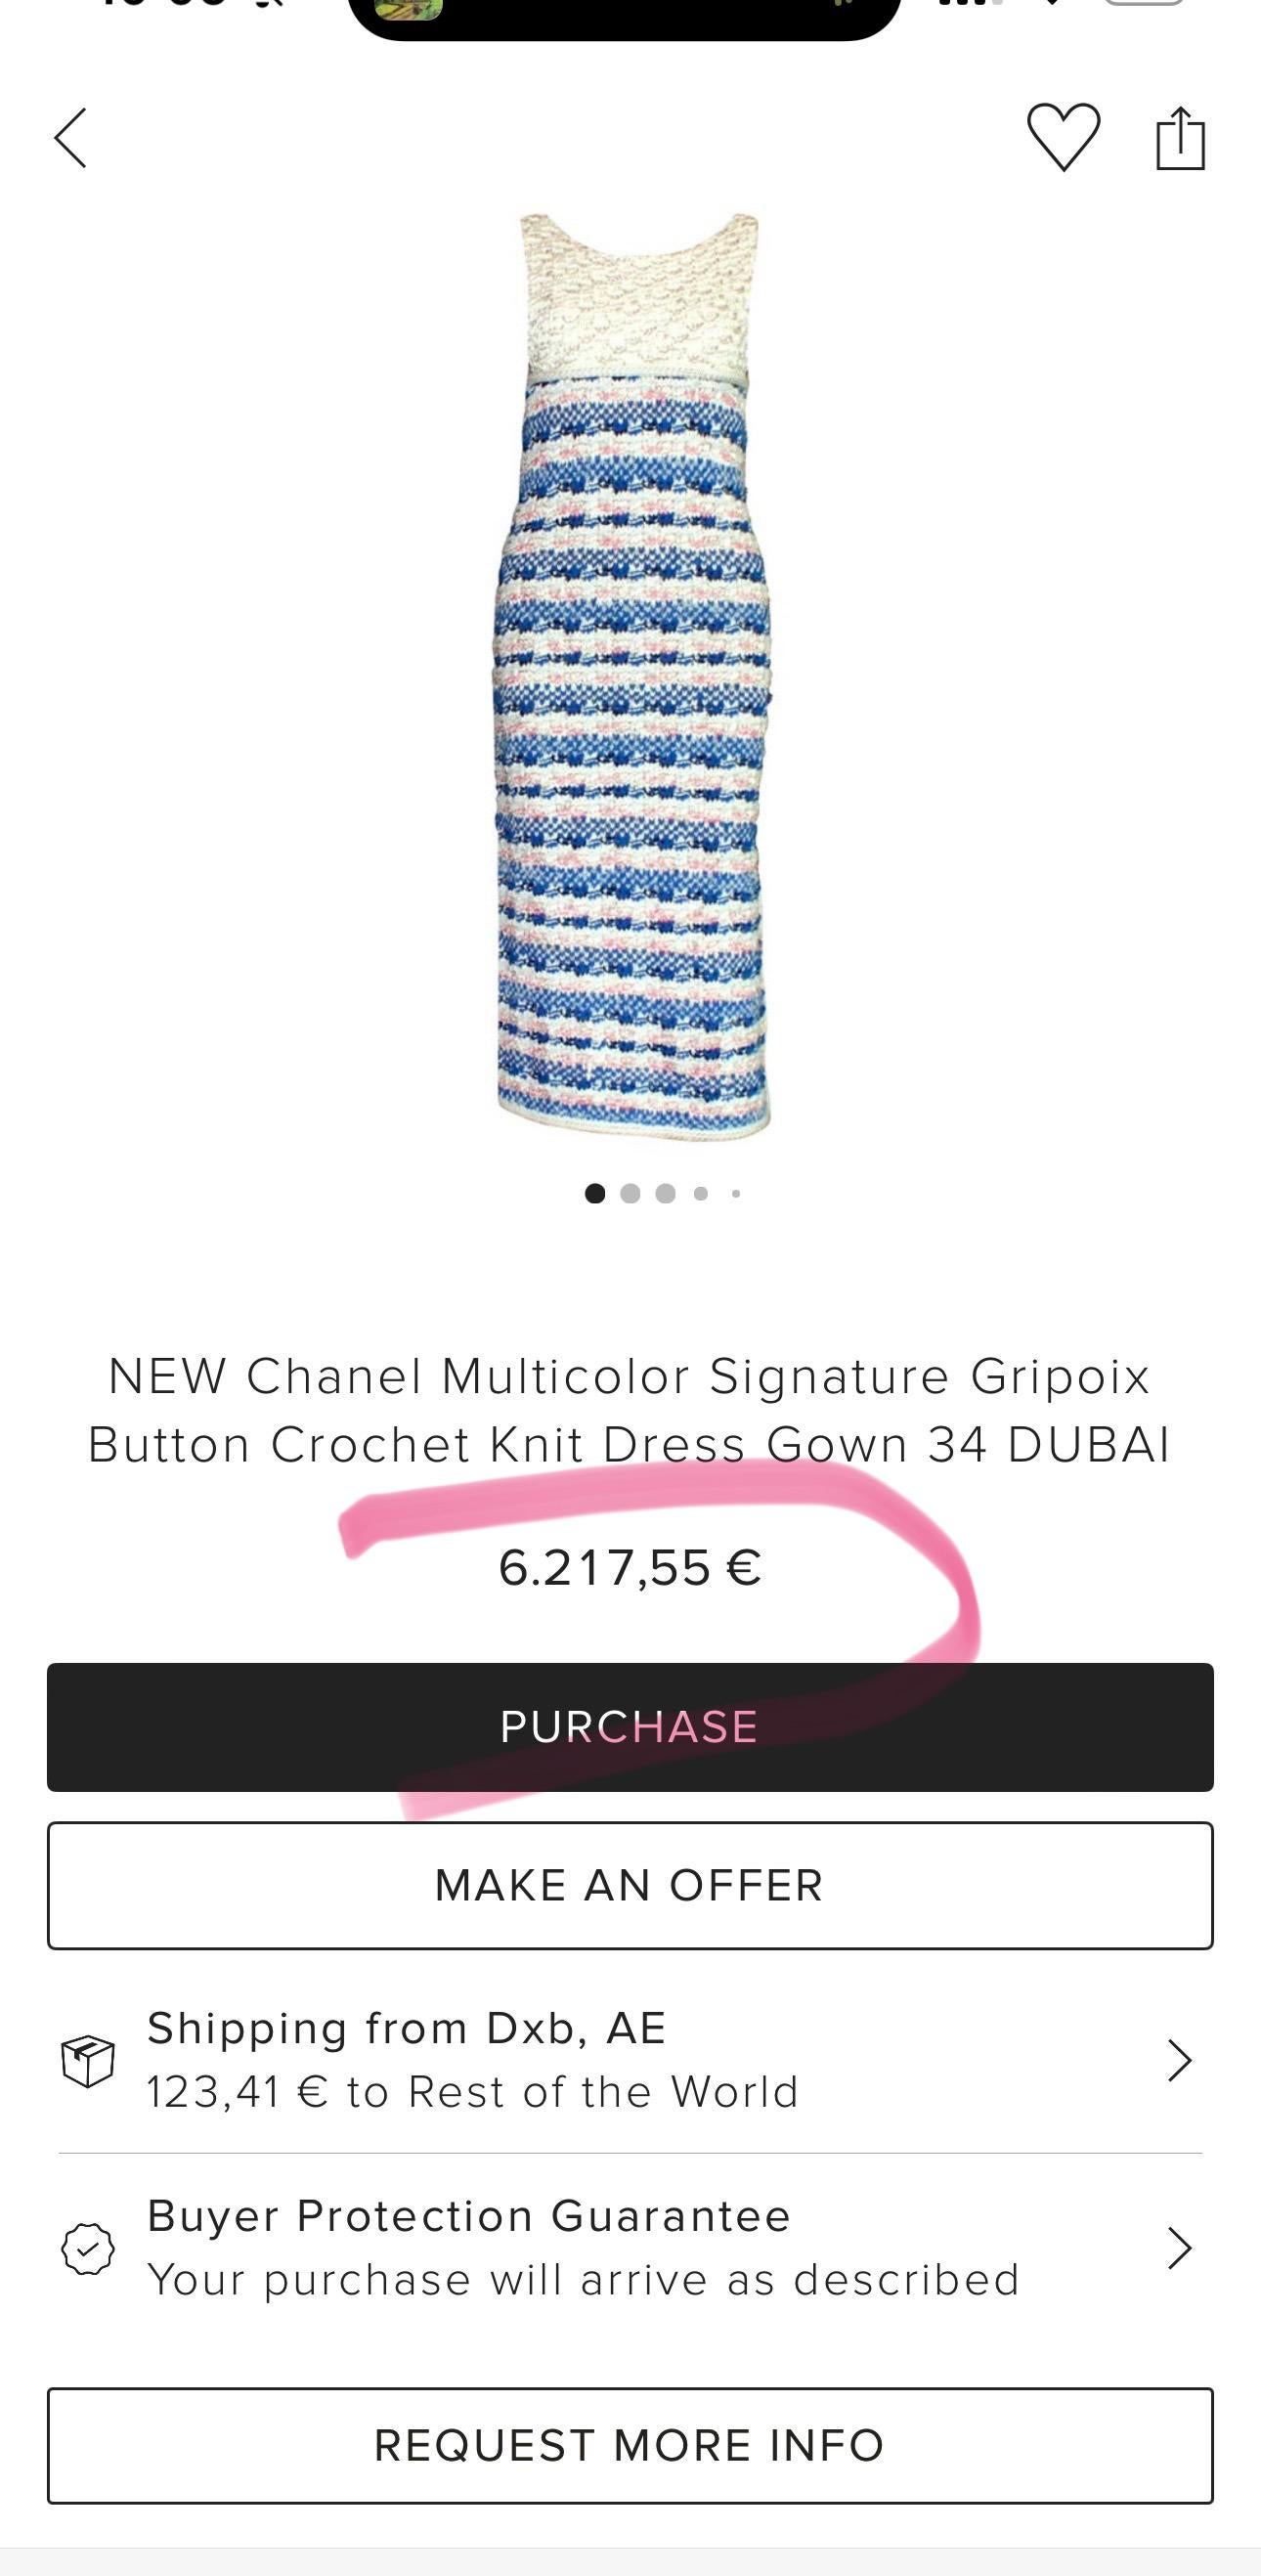 Atemberaubende Runway Chanel gewebt Tweed-Kleid aus Paris / DUBAI Cruise 2015 Collection.
- Reihe von CC Jewel Gripoix-Knöpfen an der Seite
Größenbezeichnung 34 FR. Der Zustand ist tadellos.